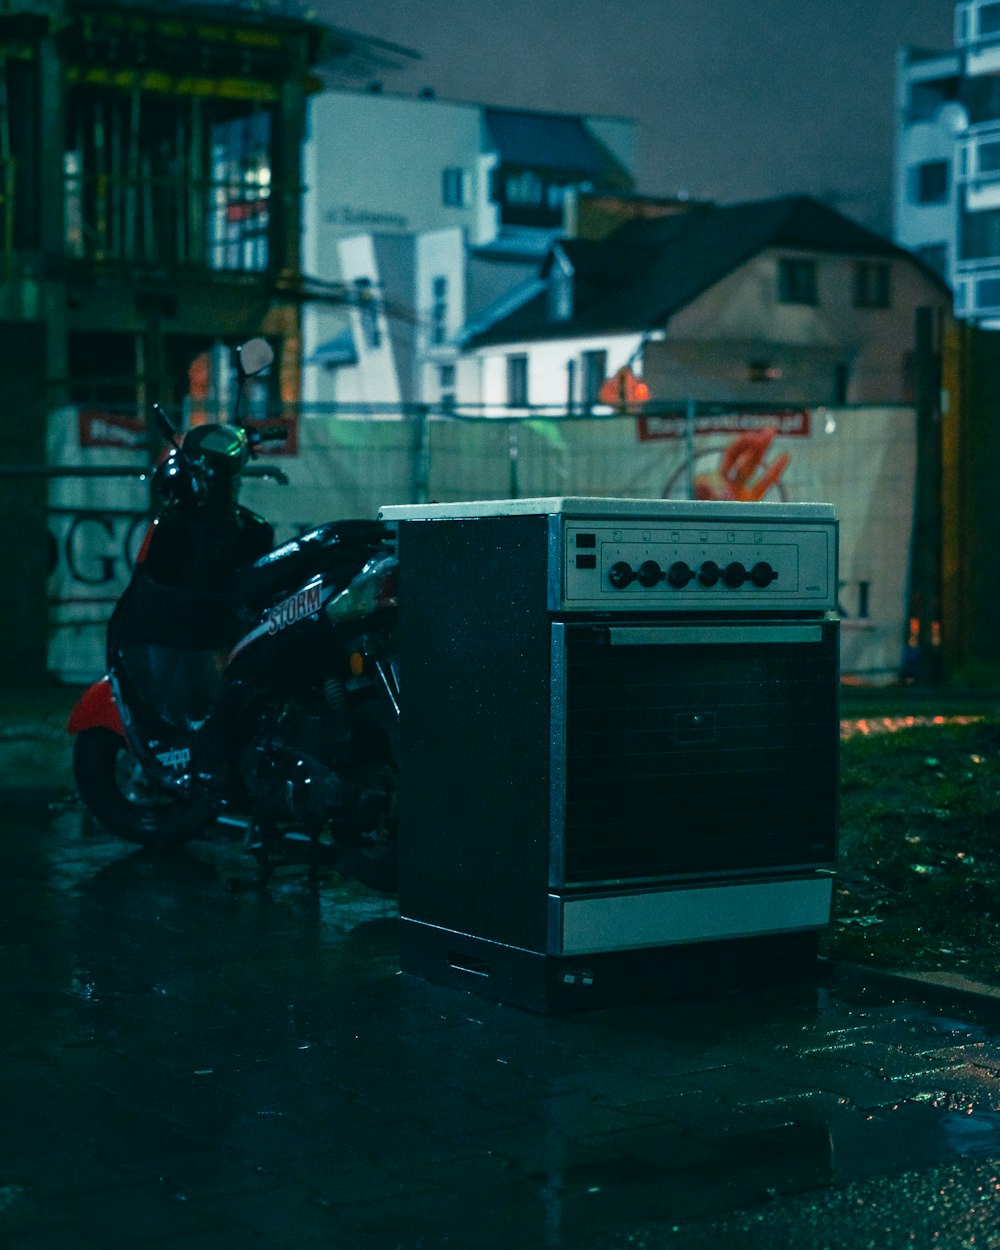 회색과 검은색 컨테이너 옆에 주차된 검은색 오토바이